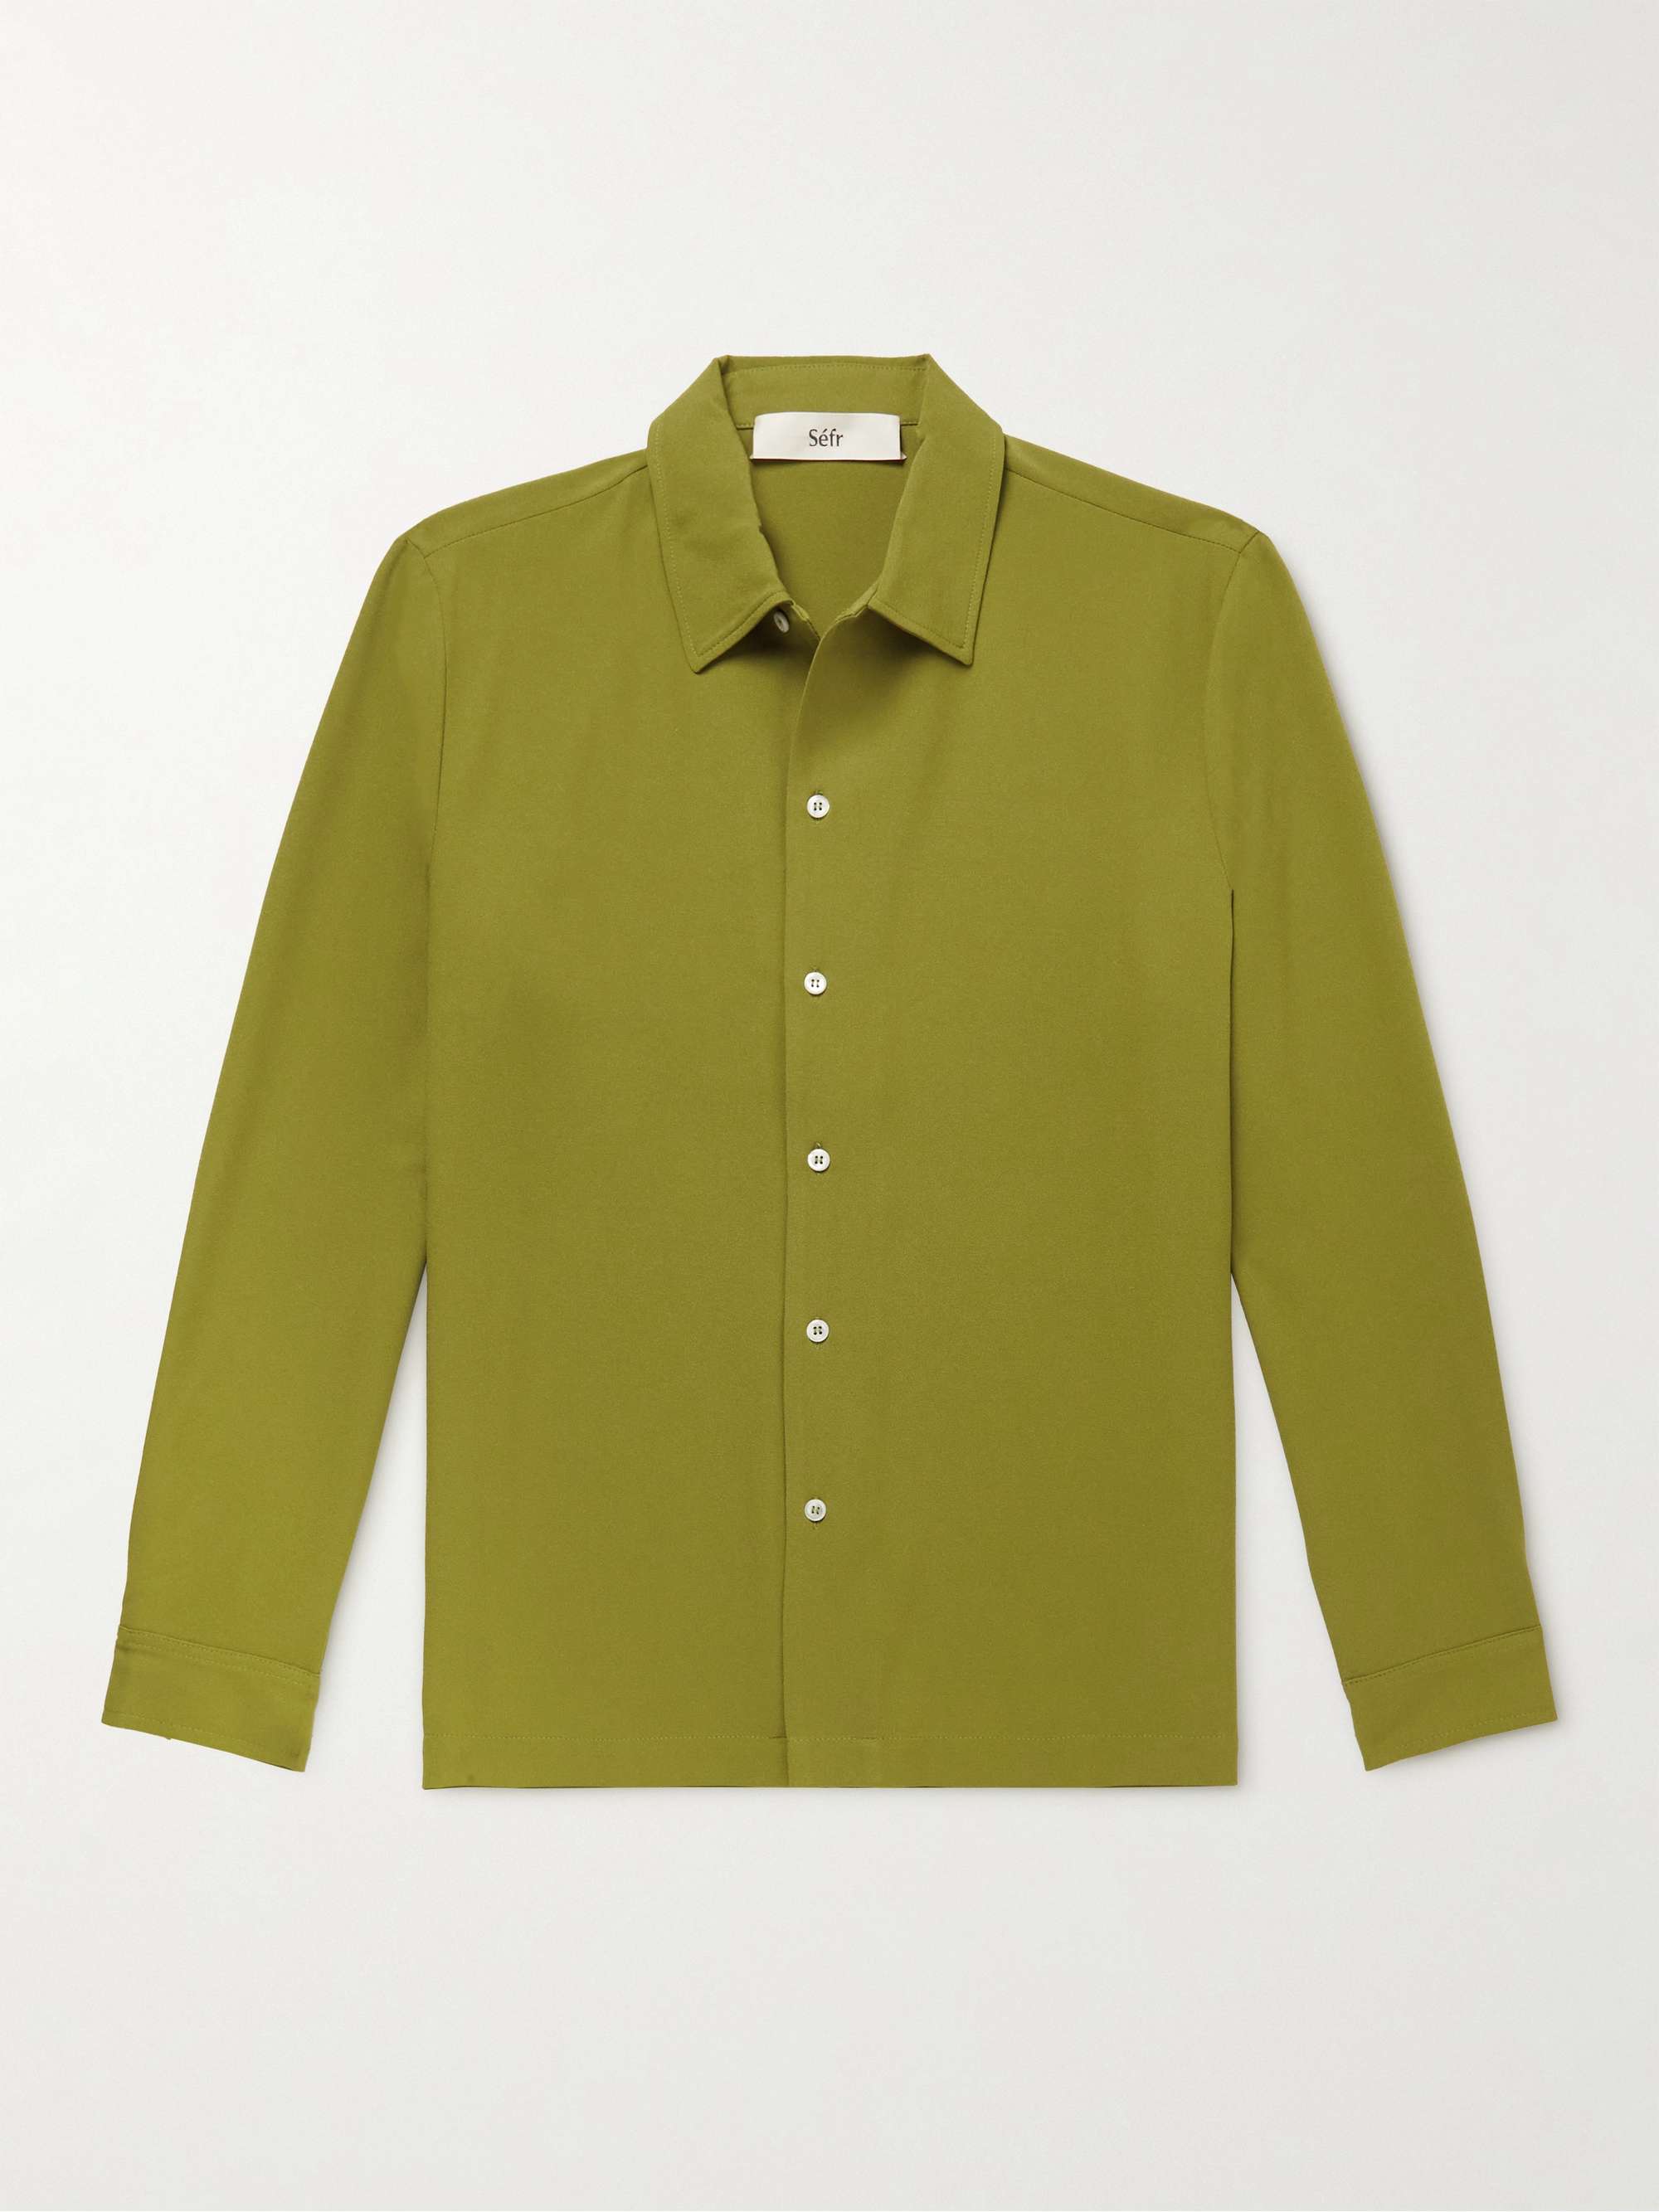 SÉFR Cotton and Linen-Blend Shirt